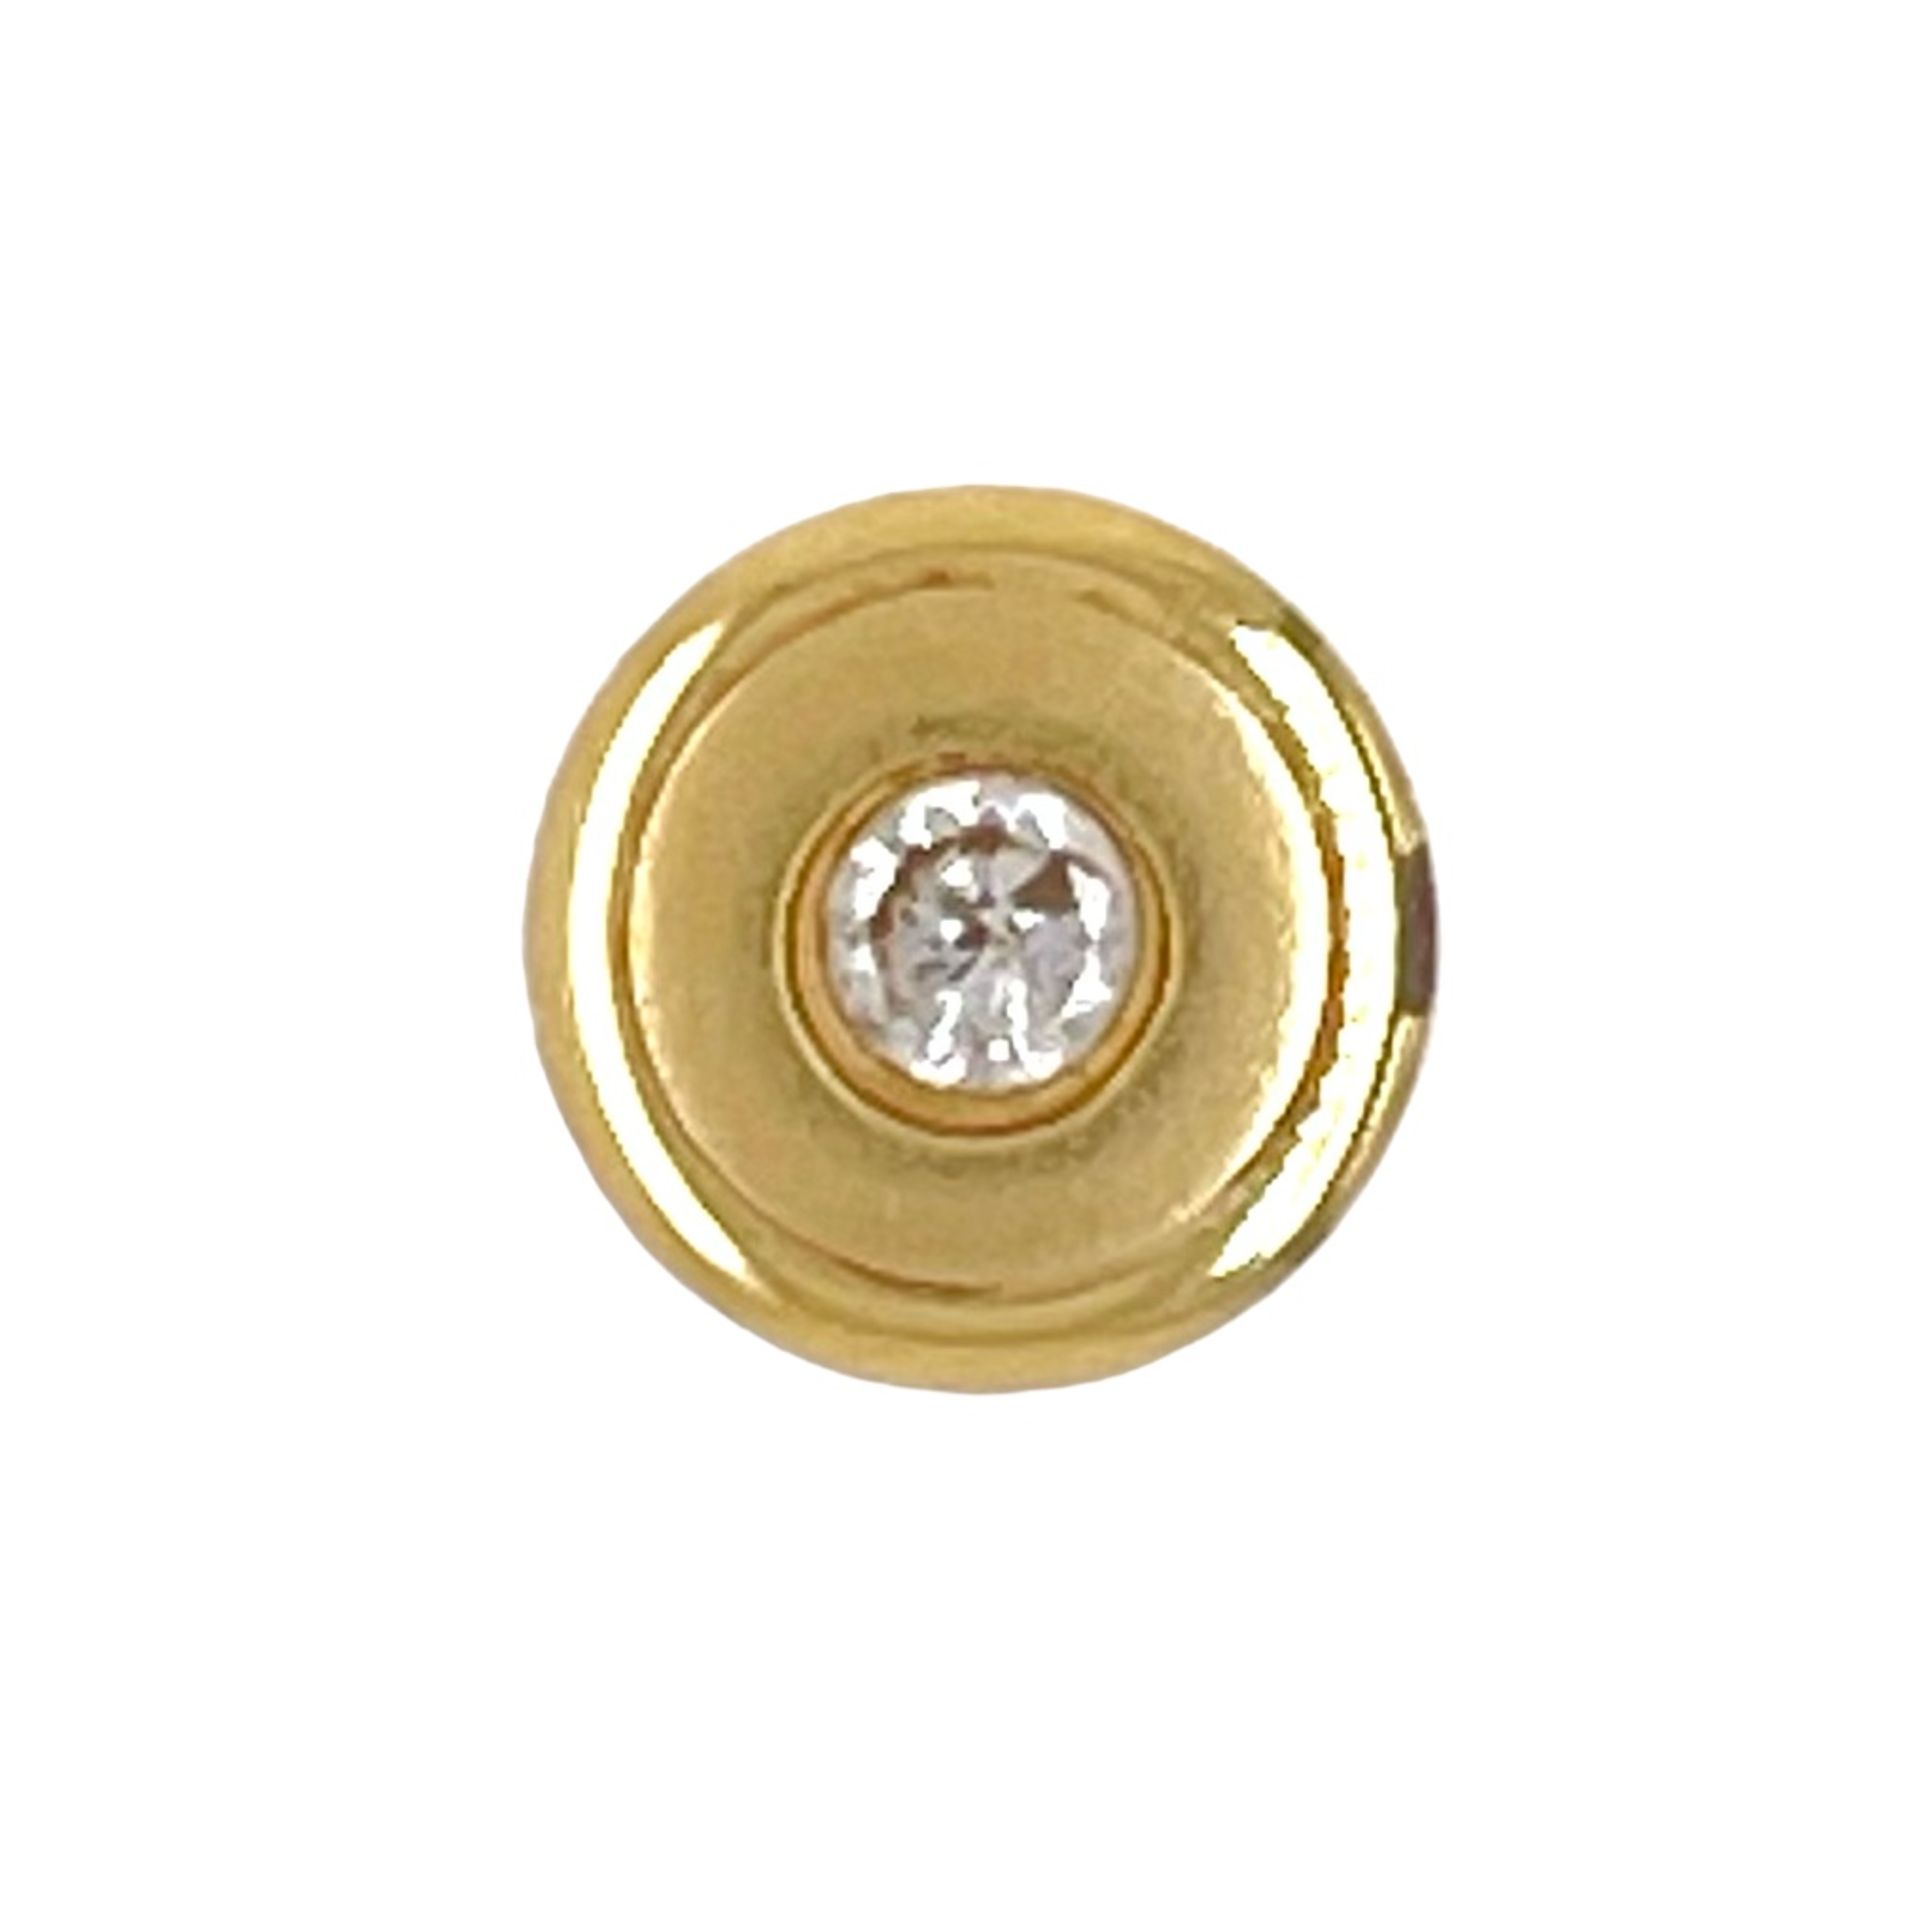 Anhaenger 1,09g 585/- Gelbgold mit Diamant ca. 0,07 ct.